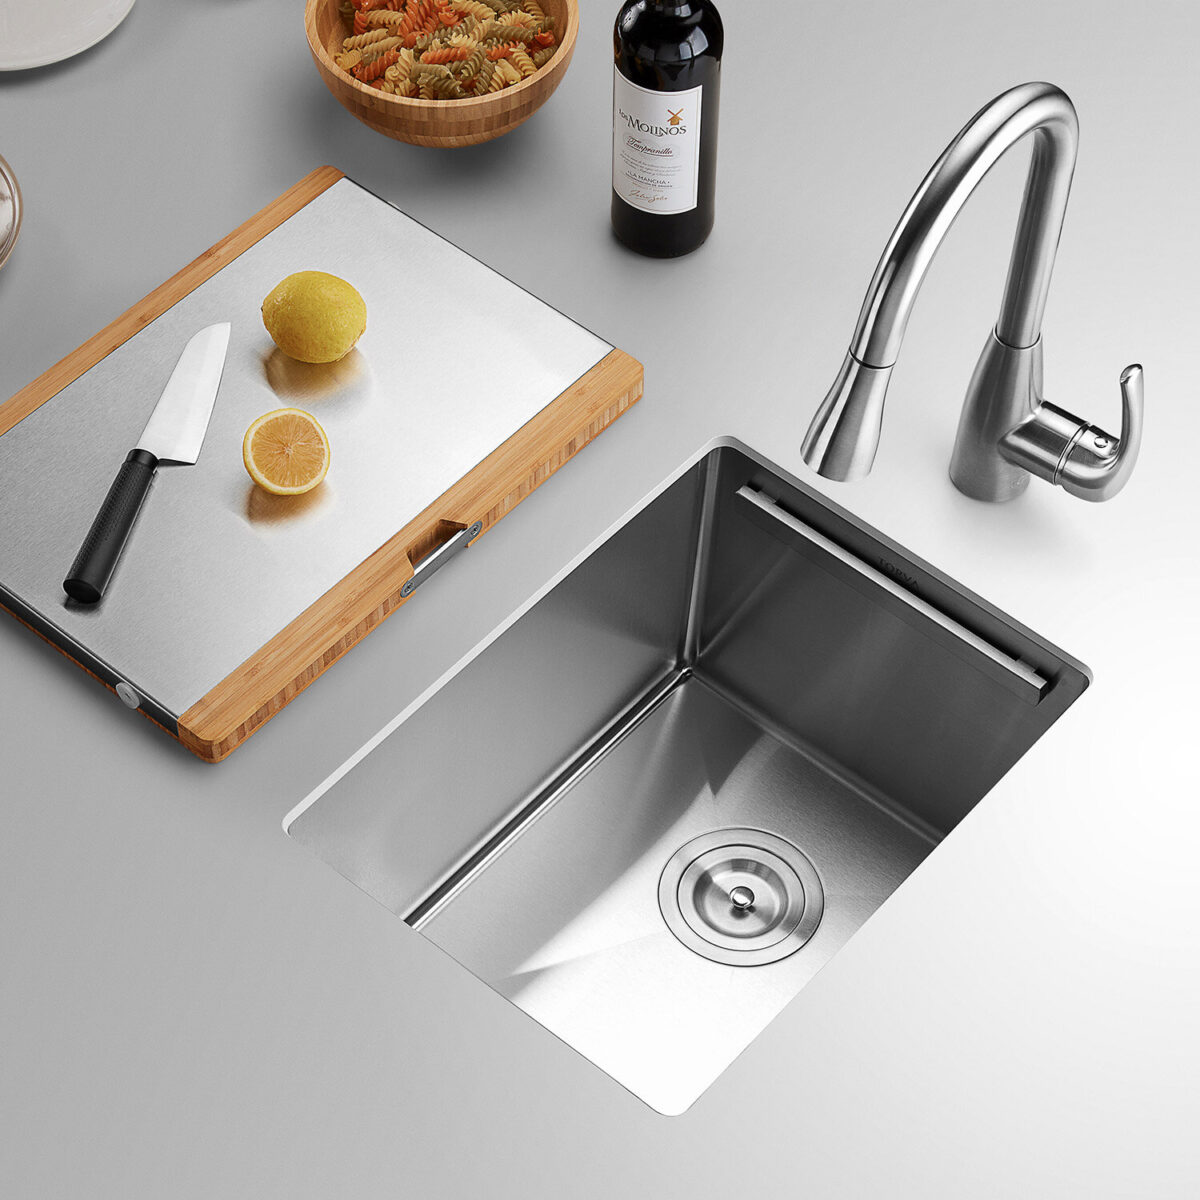 clean-kitchen-sink-drain-21